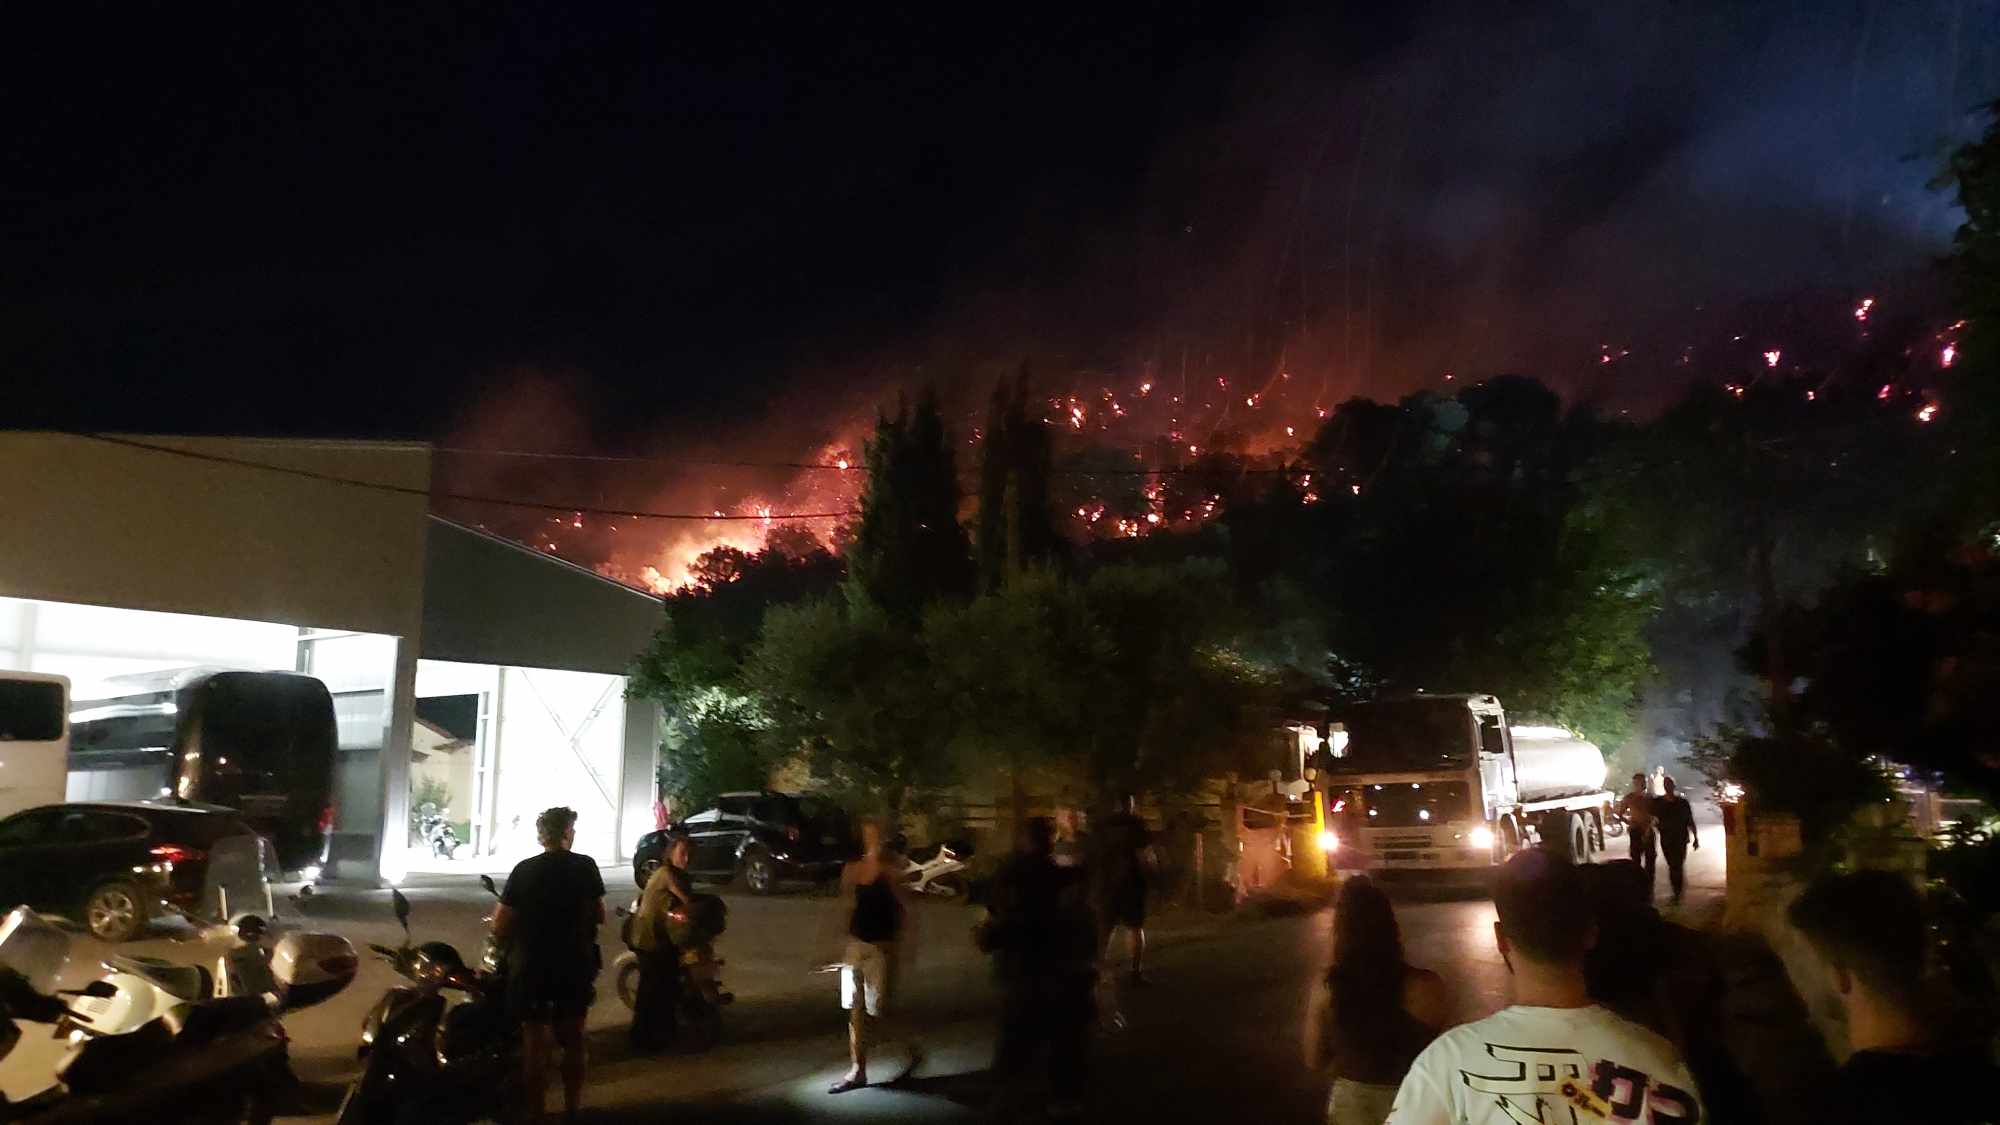 Ζάκυνθος: Κλιμάκιο της Δ/σης Αντιμετώπισης Εγκλημάτων εμπρησμού ερευνά τις φωτιές που εκδηλώθηκαν στο νησί